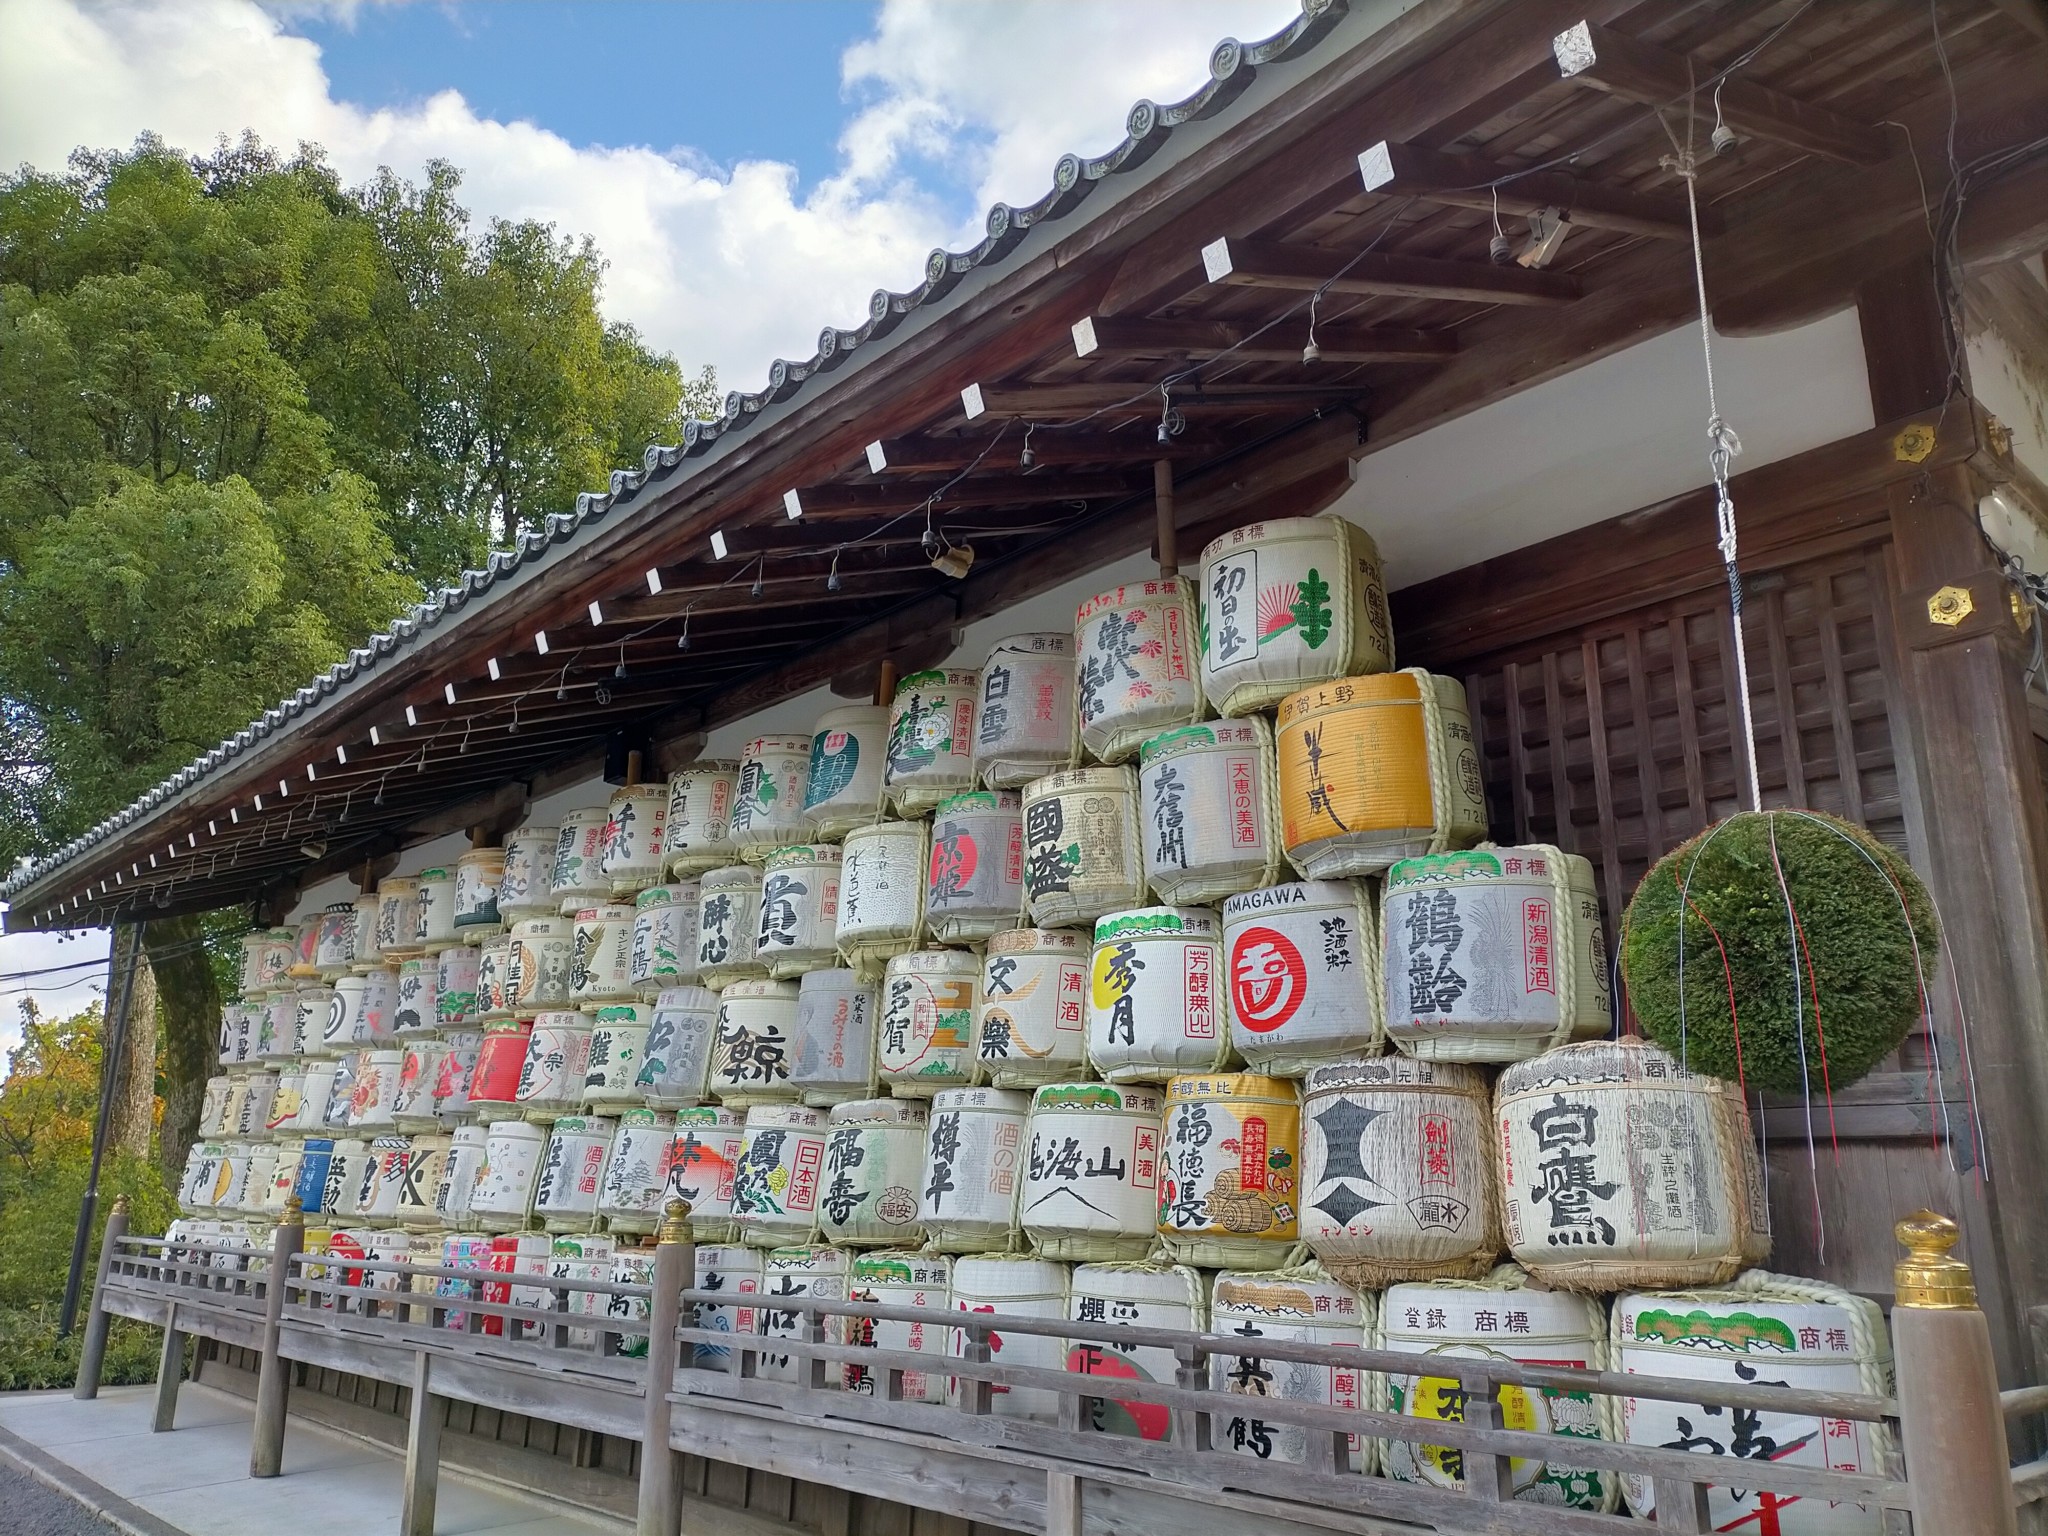 お酒の神様を祀る松尾大社には亀と鯉のご利益と長寿の名水あり | 京都